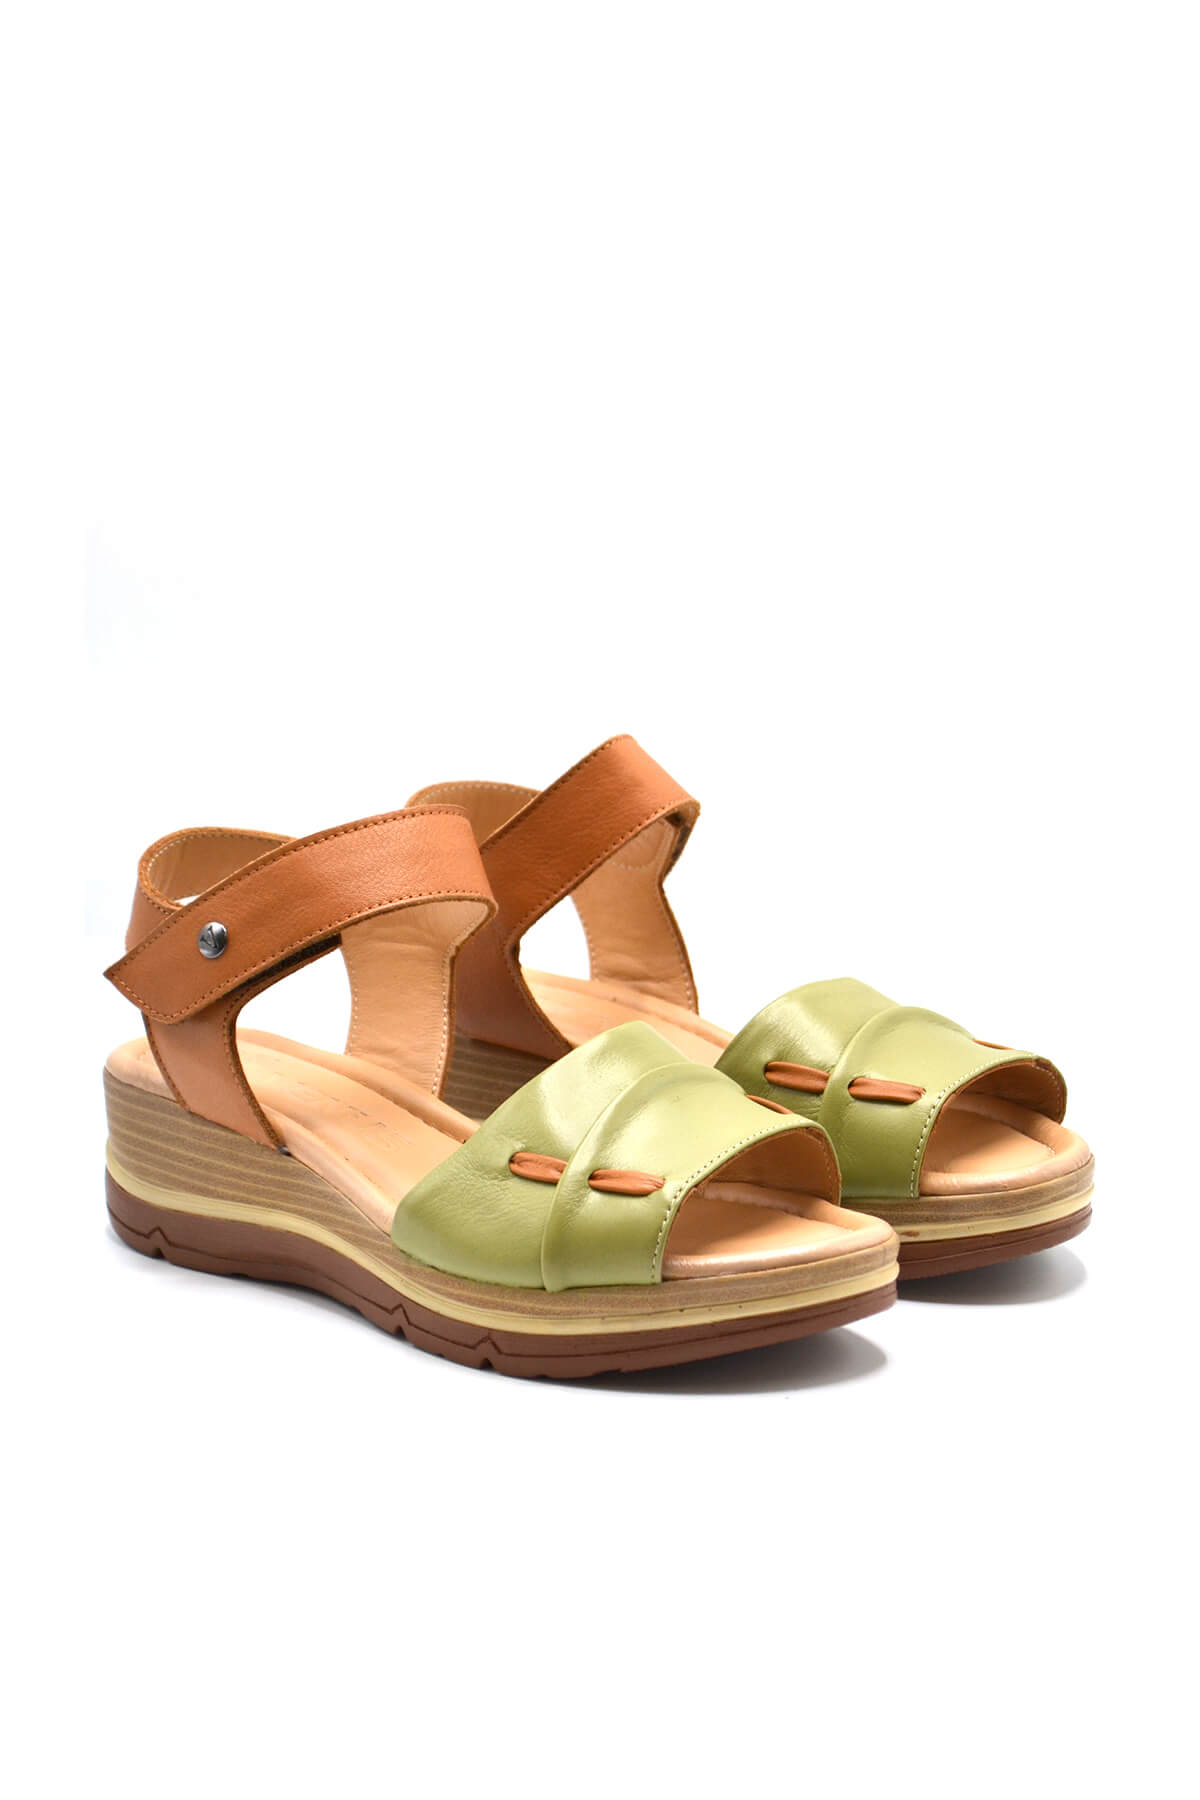 Kadın Comfort Deri Sandalet Fıstık Yeşili 2313402Y